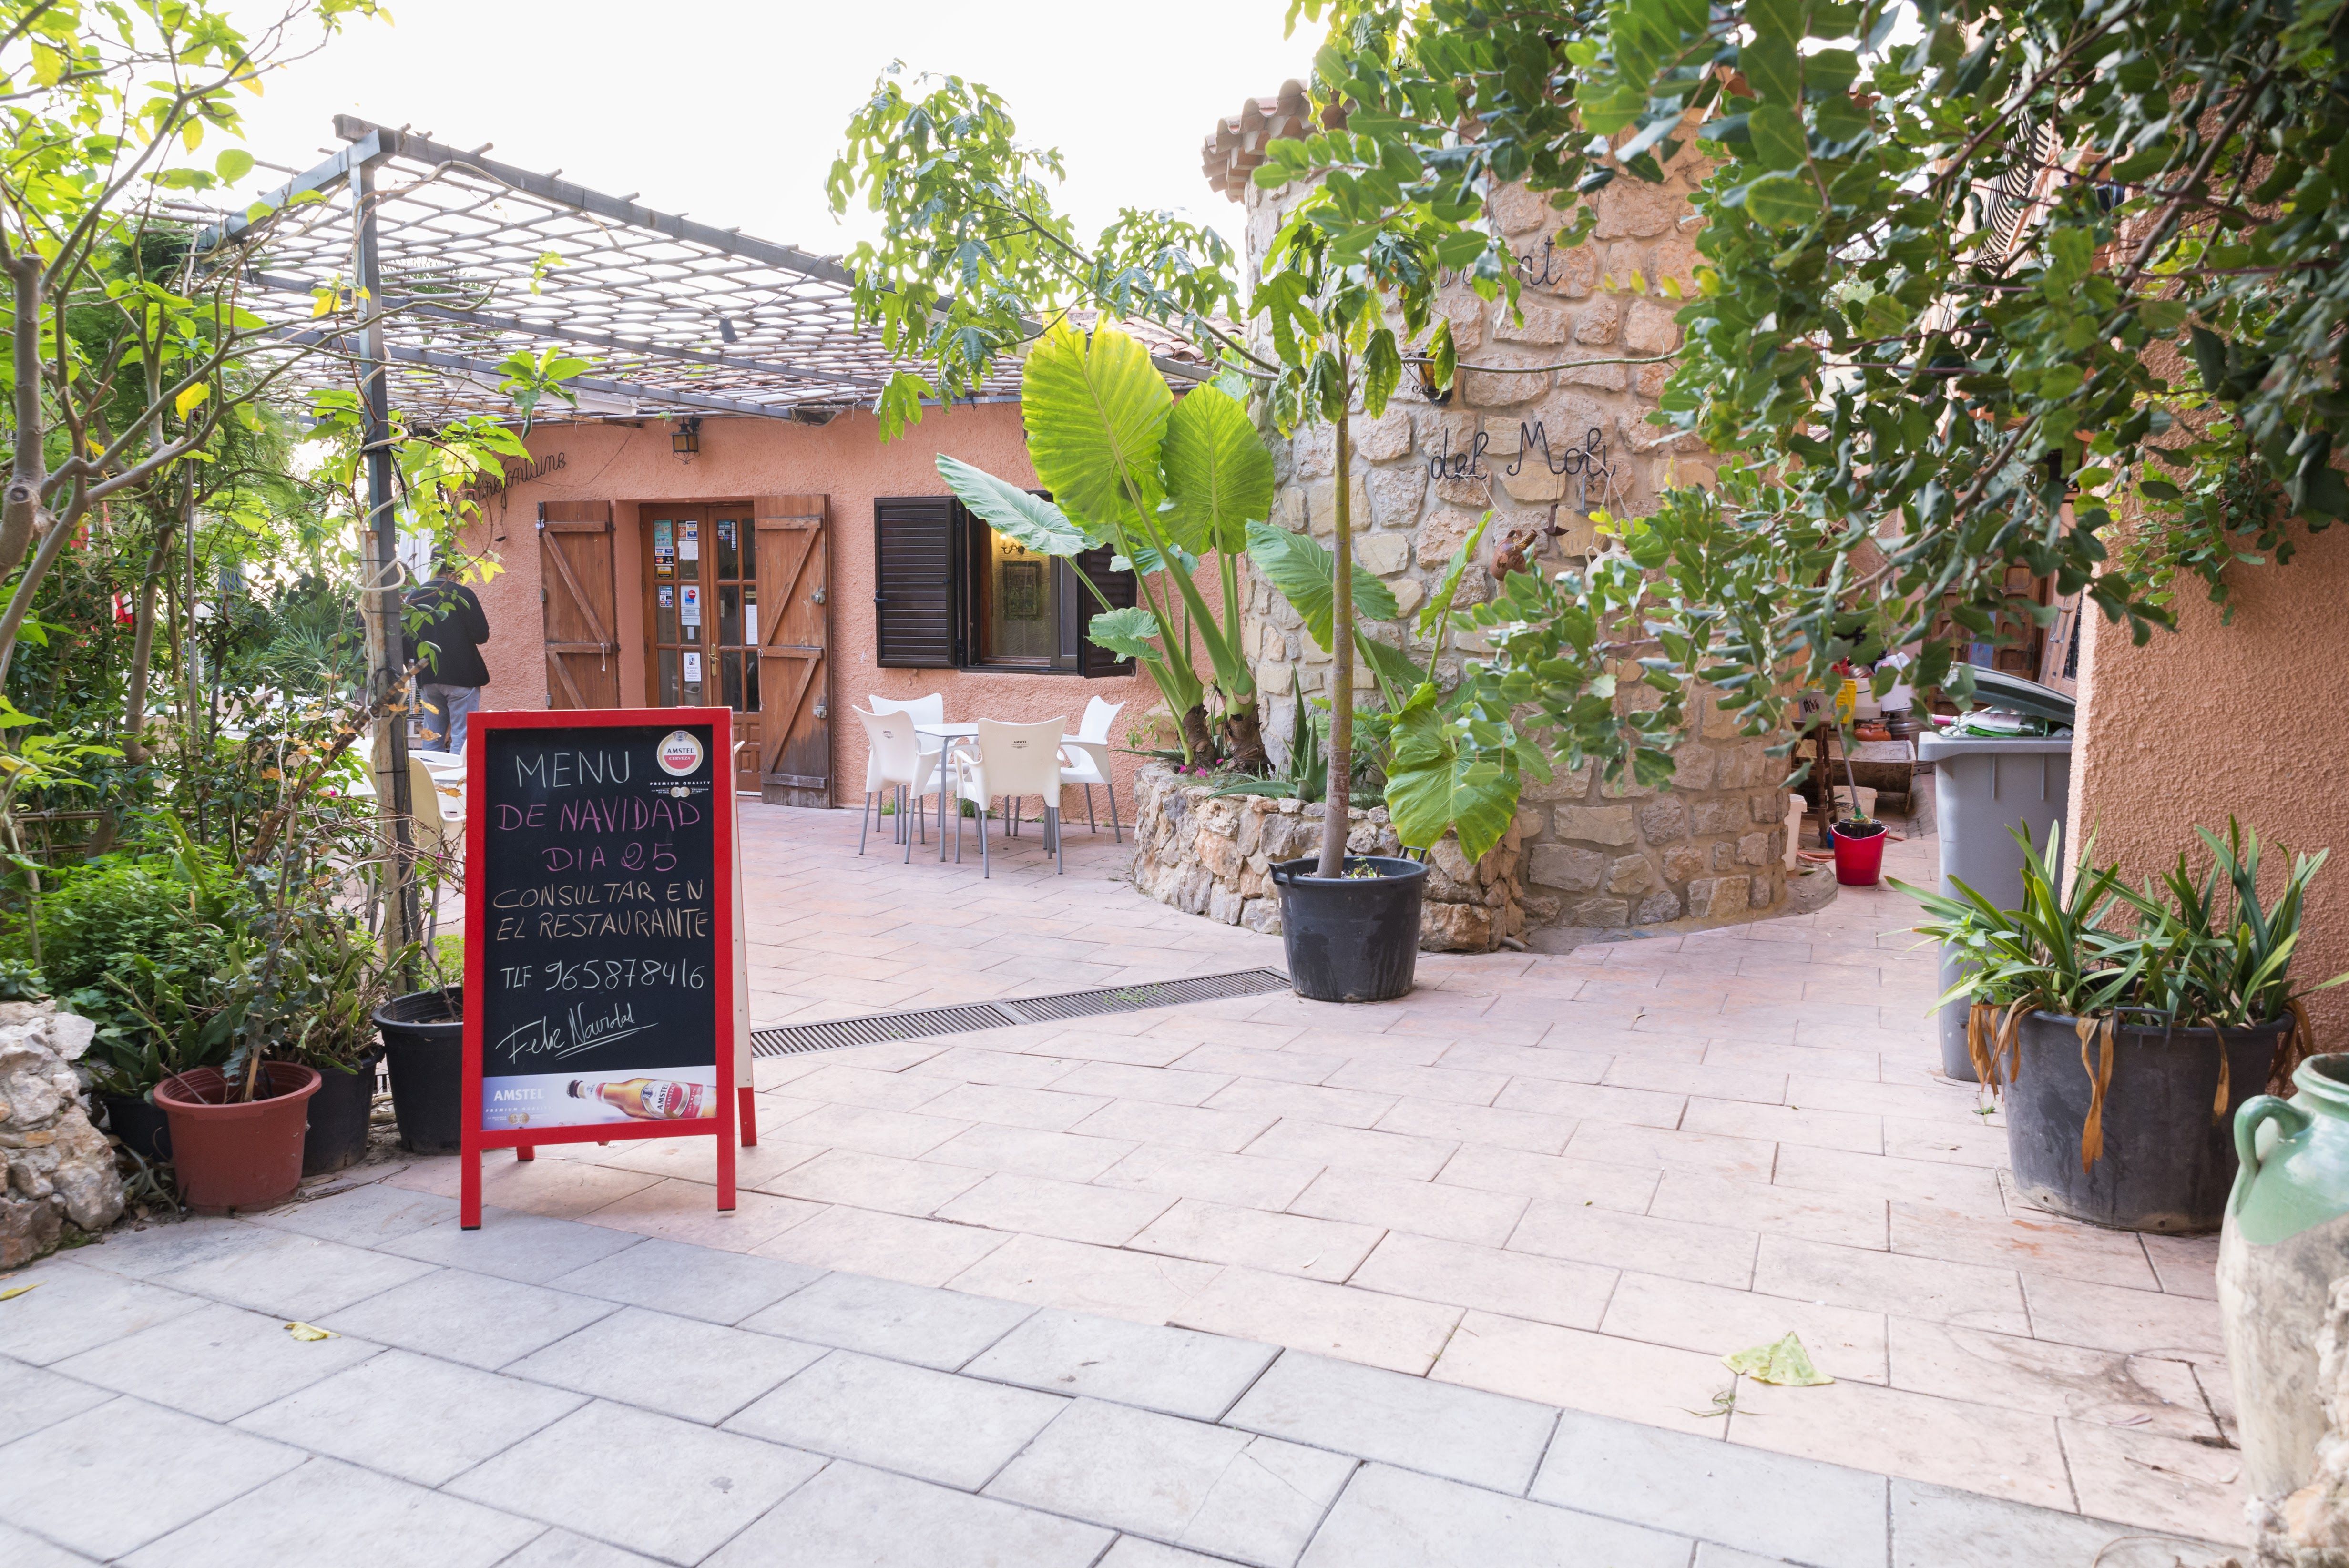 Foto 4 de Restaurante de cocina mediterránea en  | Restaurante Font del Molí